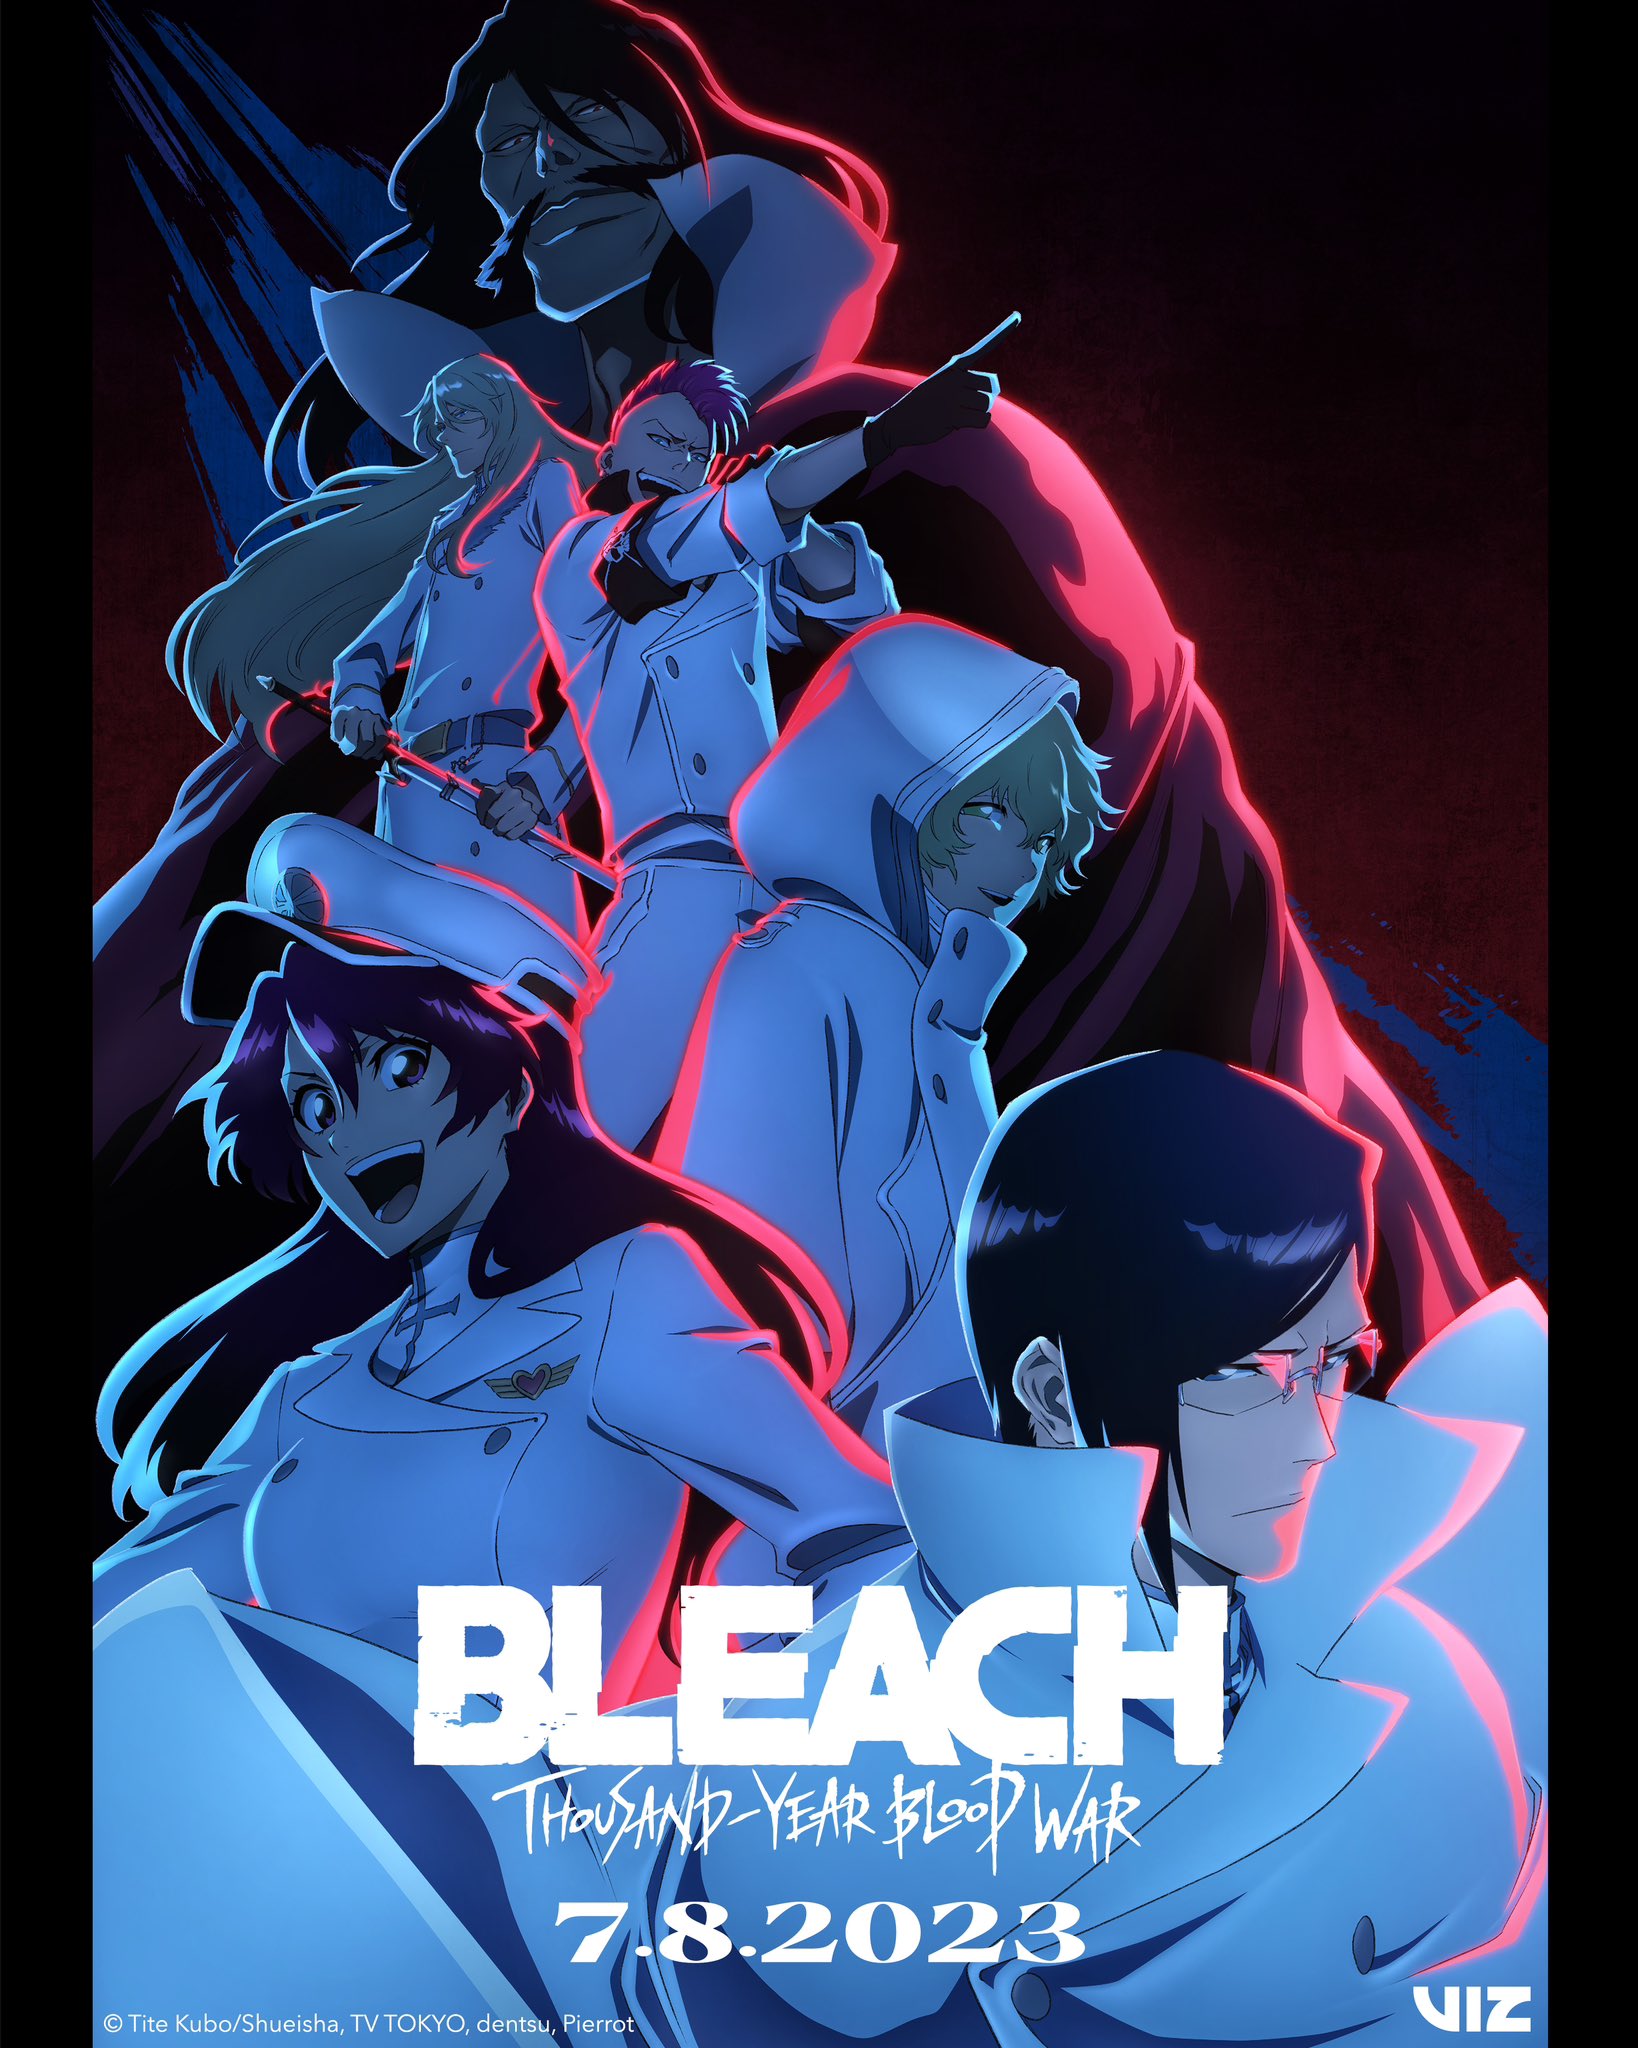 Bleach: Sennen Kessen-hen – 3º Parte do último arco em 2024 - Manga Livre RS